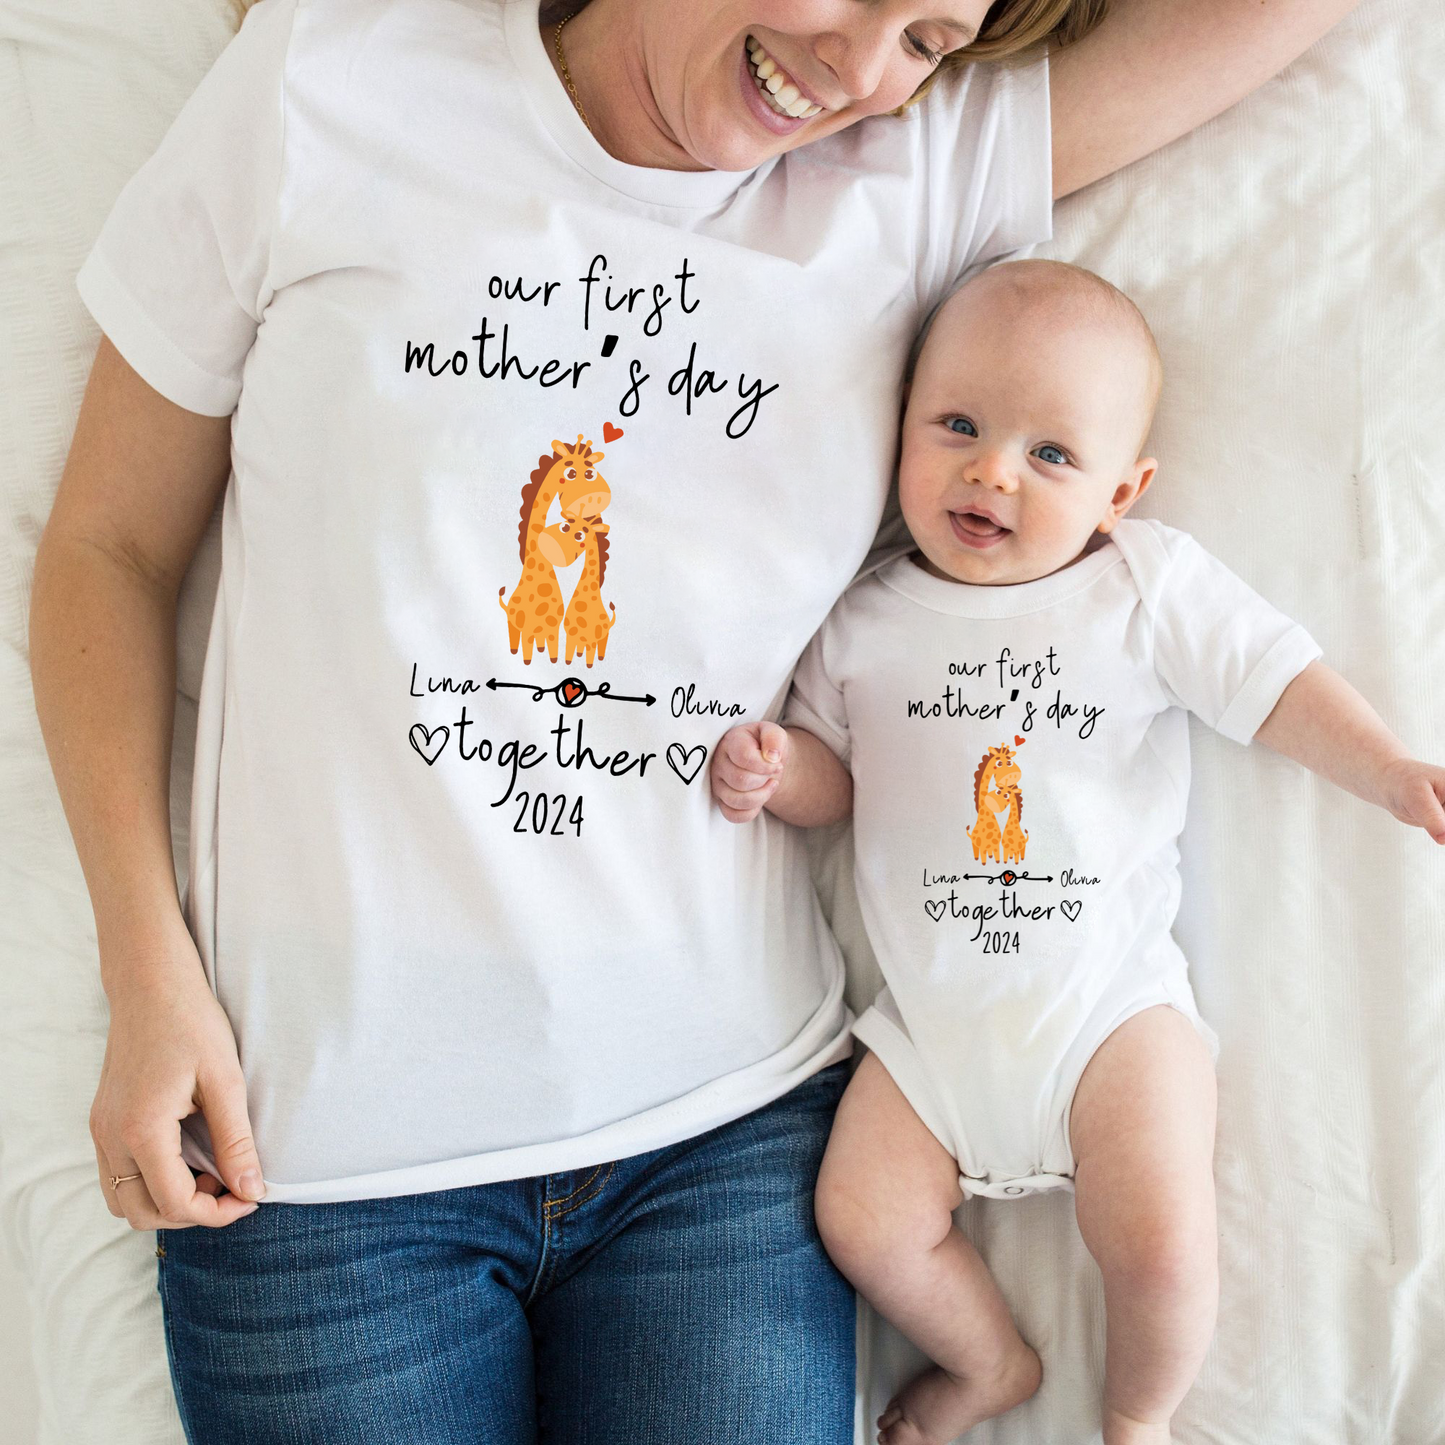 Unser Erster Muttertag Zusammen - Personalisiertes Giraffen-Shirt-Set für Mutter und Baby